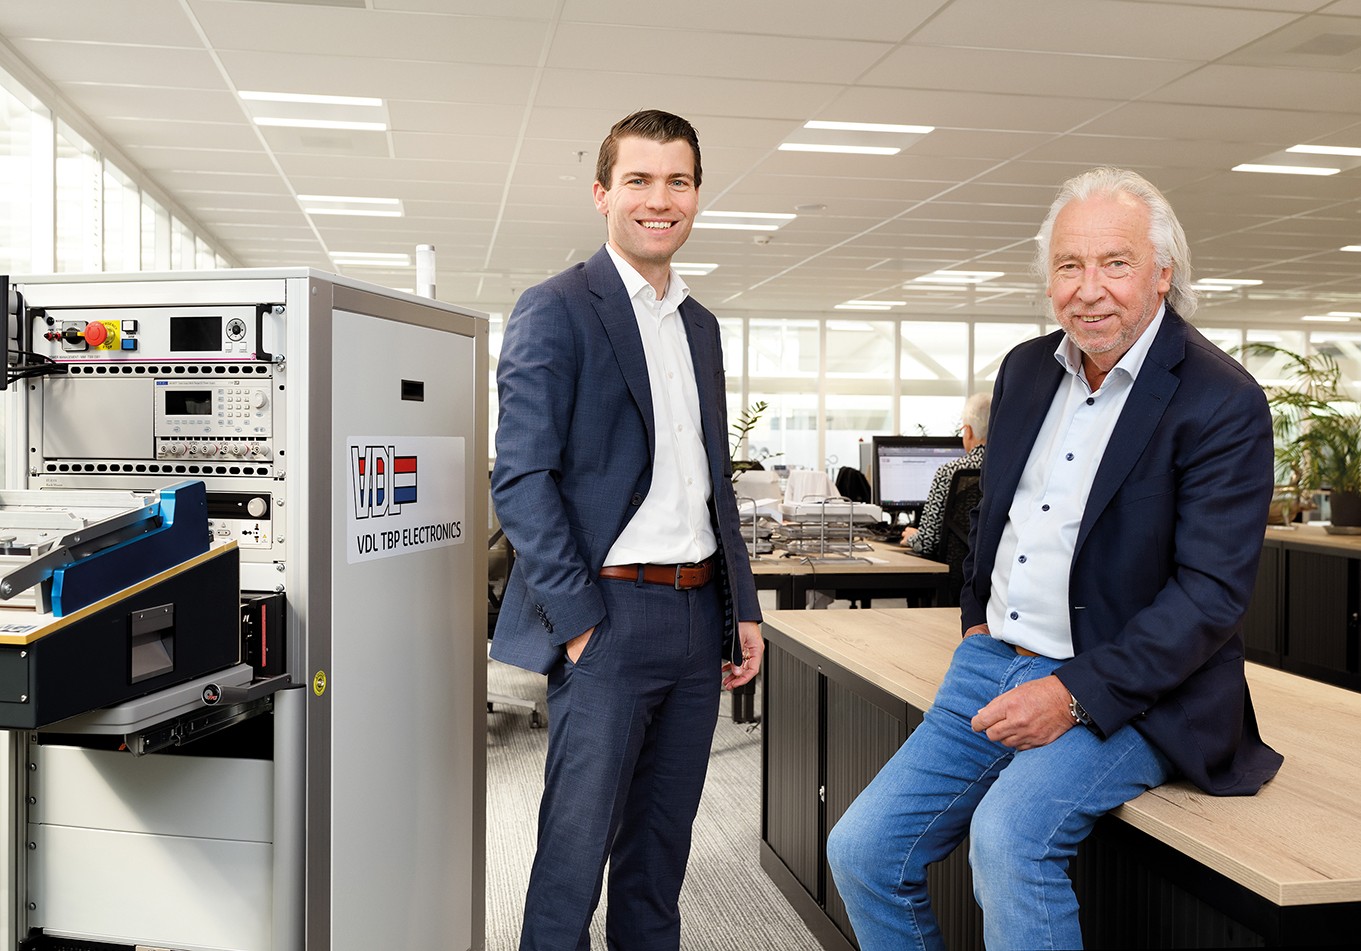 Joost van Haperen, jonge directeur wil (en moet) VDL TBP Electronics ‘significant’ laten groeien